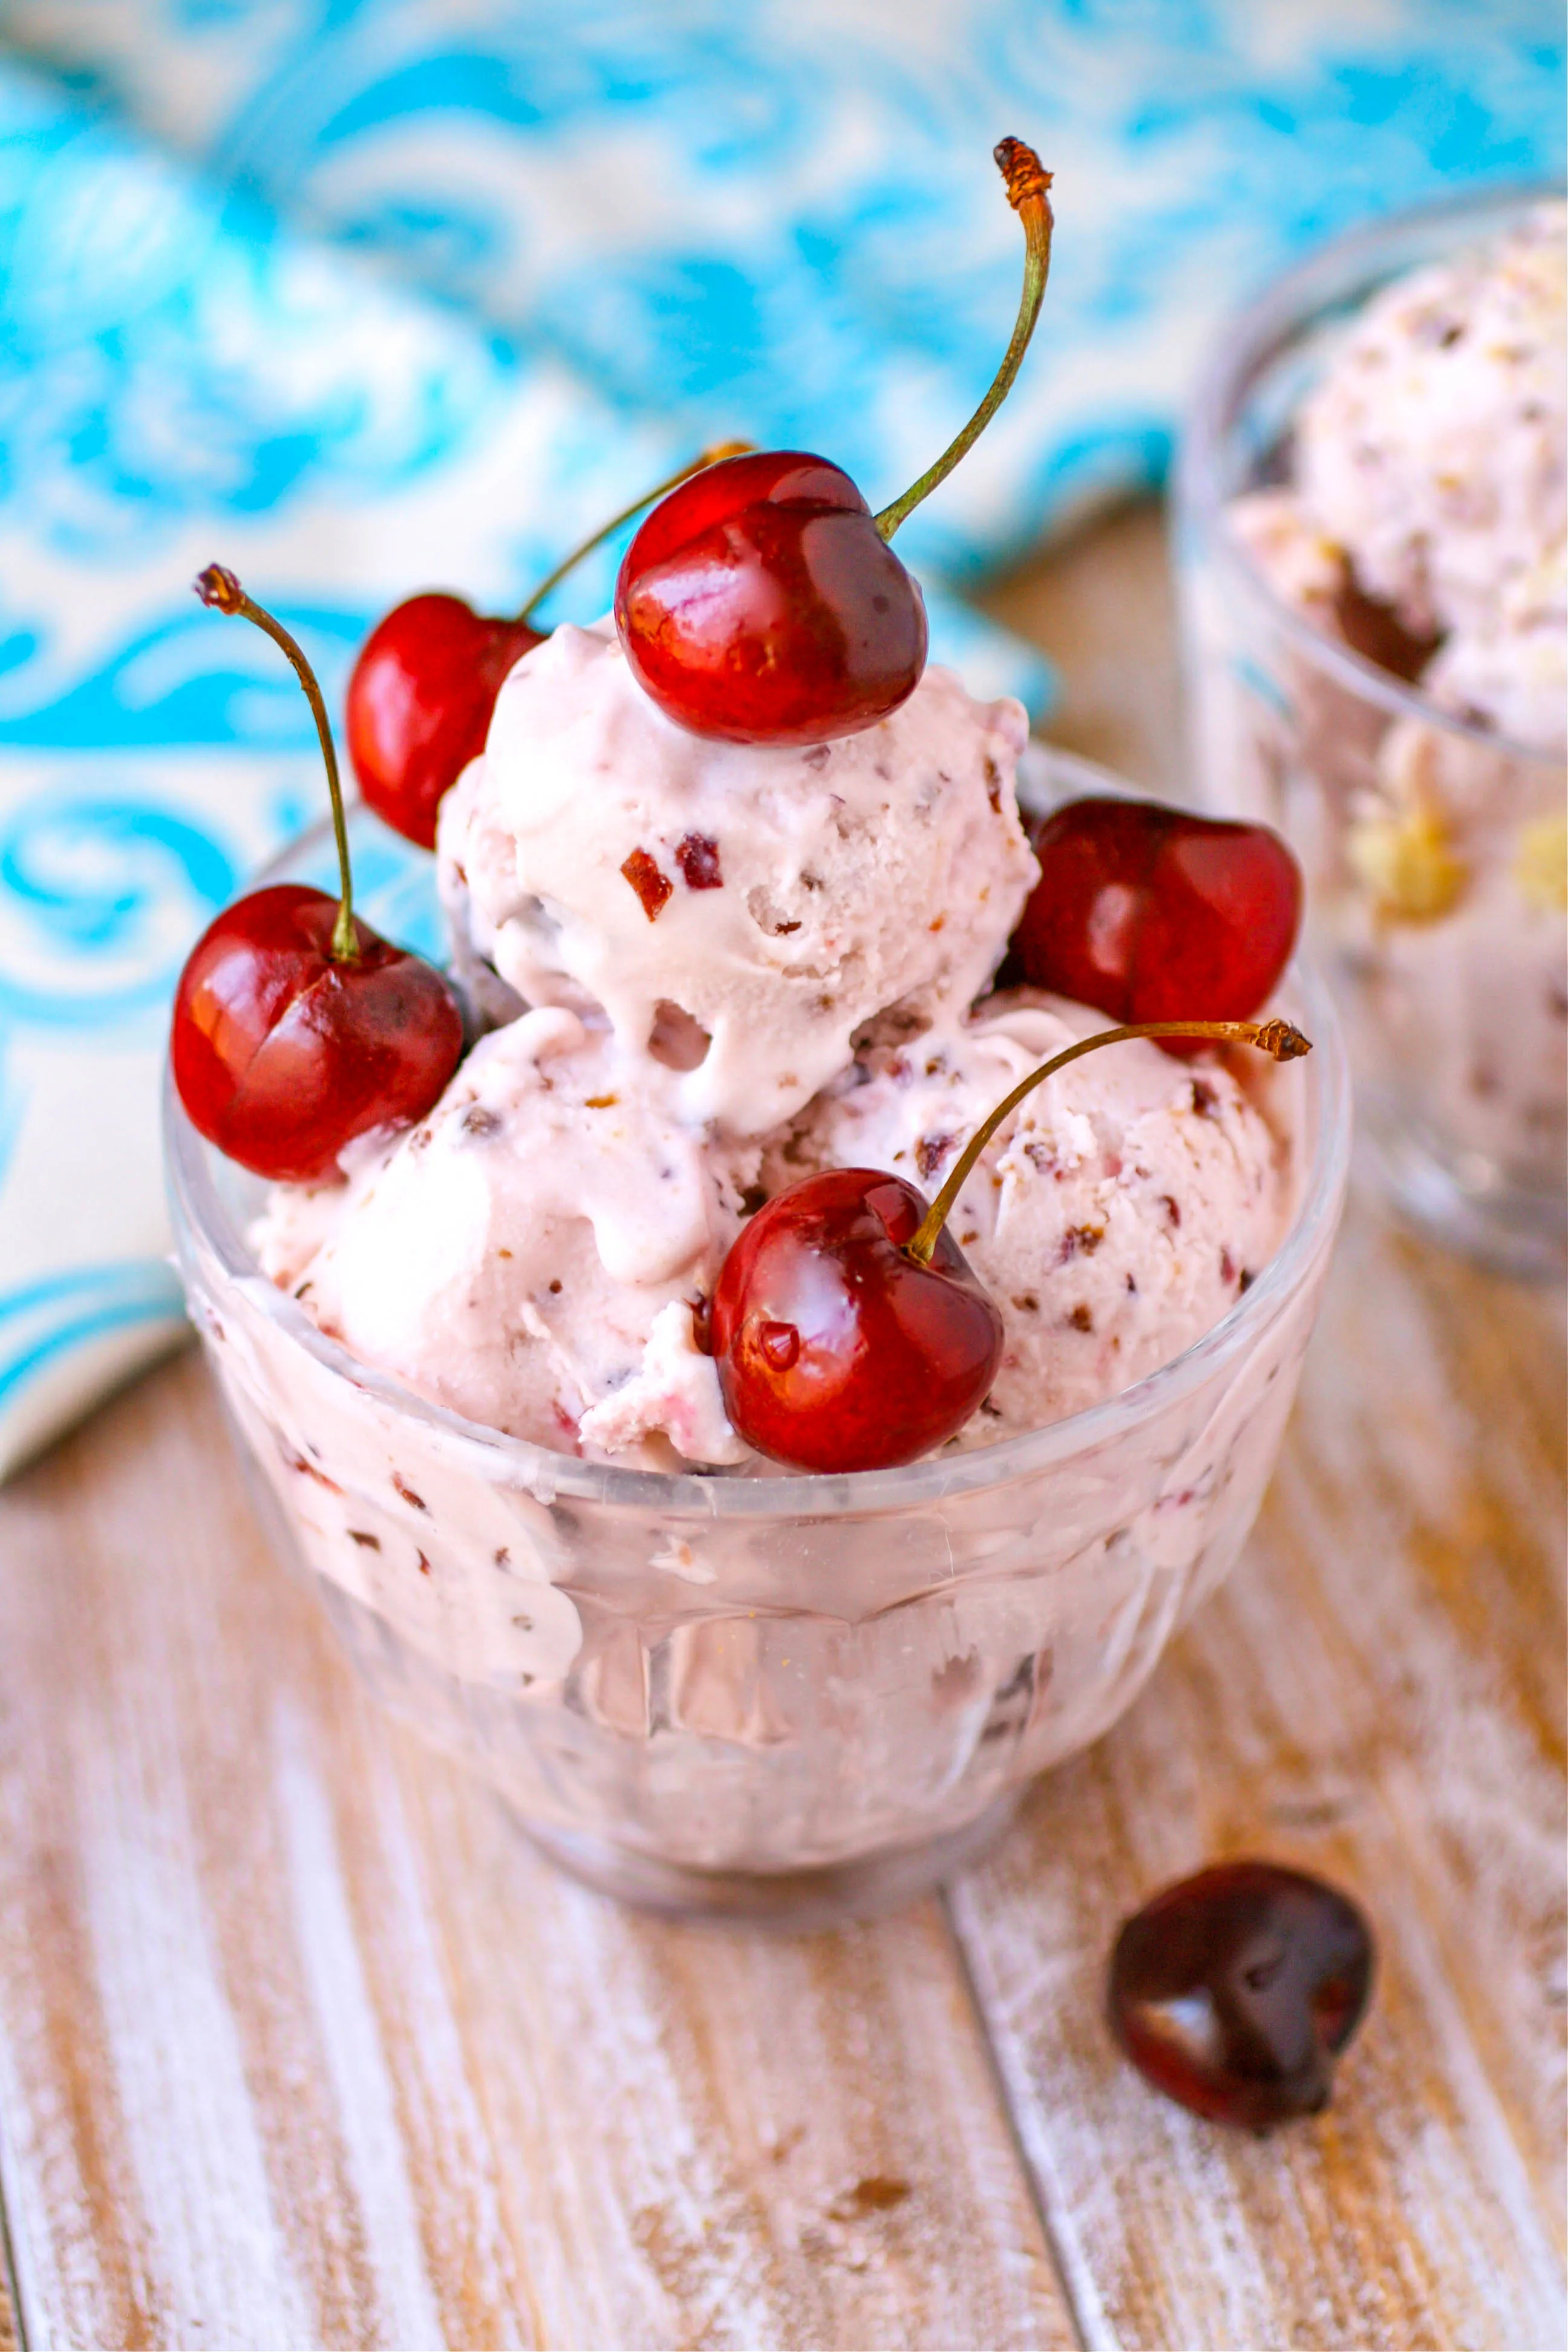 Cherry-Almond Ricotta Ice Cream is a treat during the warm weather. Cherry-Almond Ricotta Ice Cream is a tasty frozen treat!